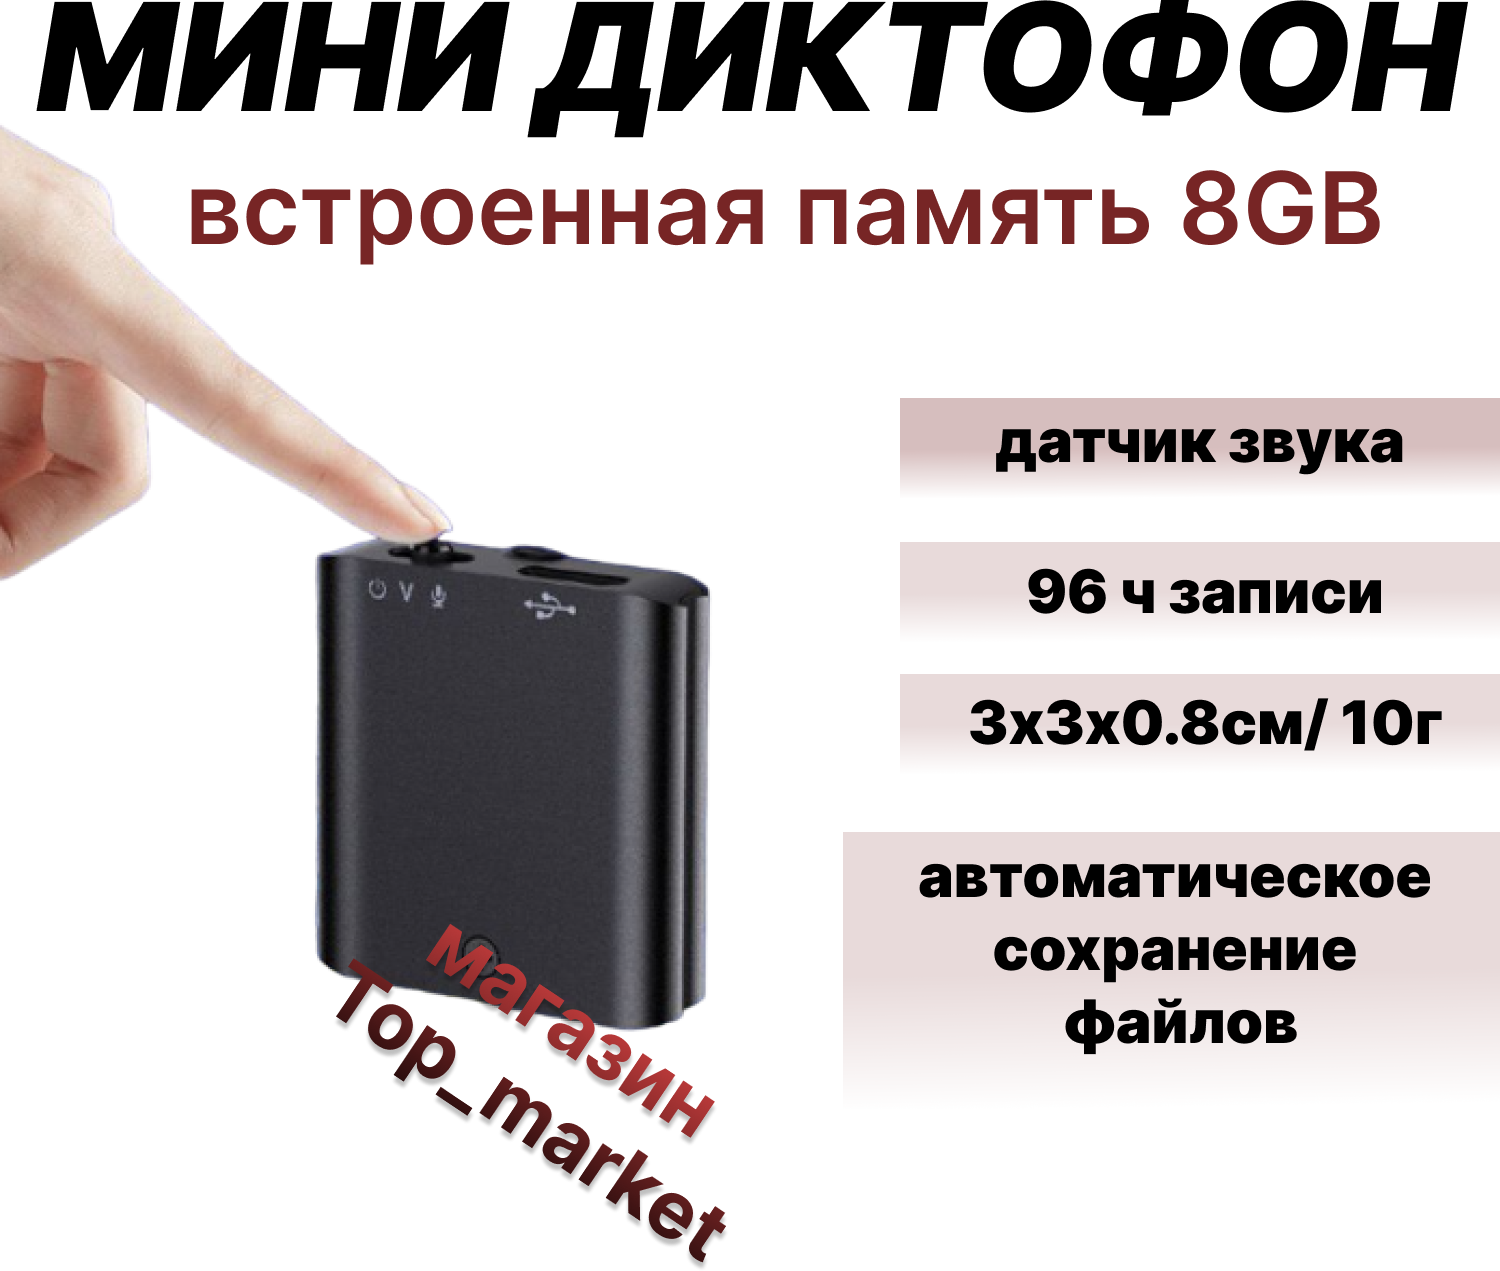 Миниатюрный тонкий диктофон SQ-76 mini 8GB 96 ч записи до 18 ч работы от заряженного аккумулятора активация голосом мини диктофон